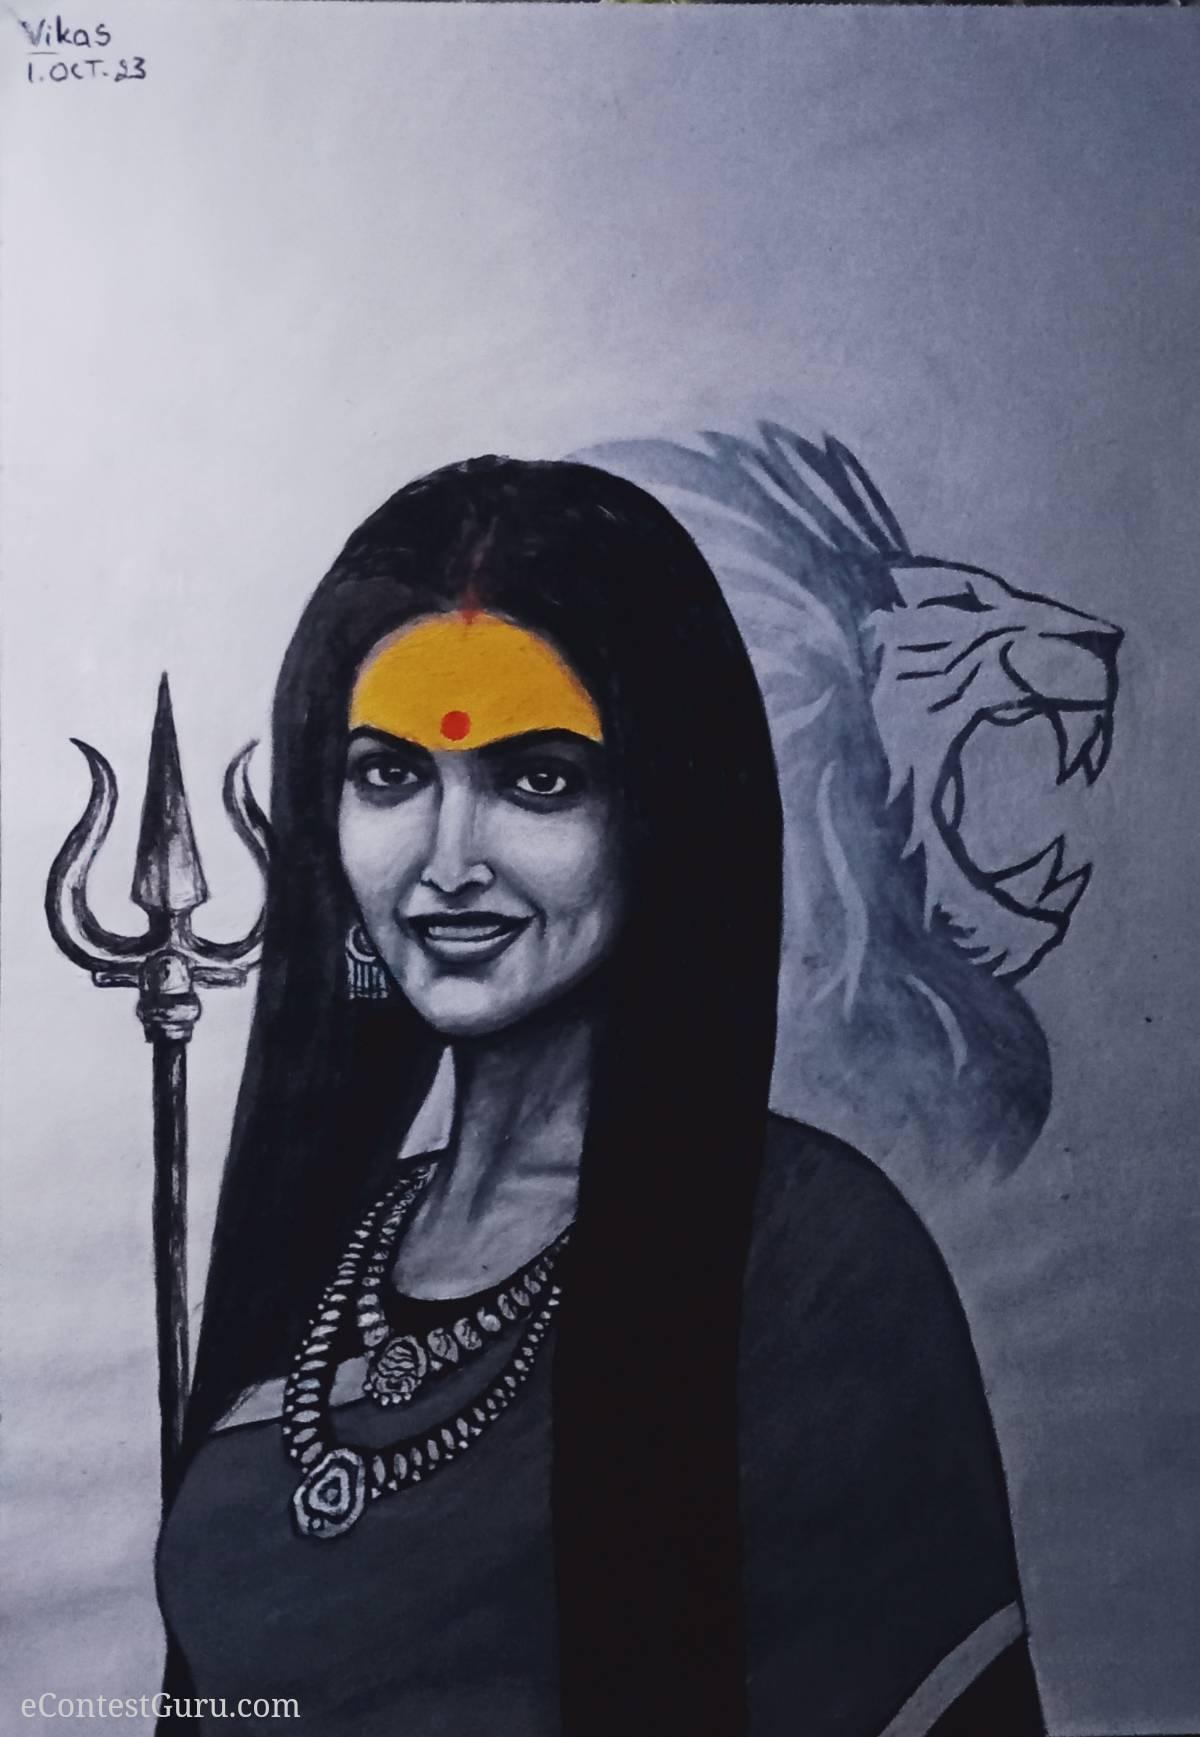 Durga devi